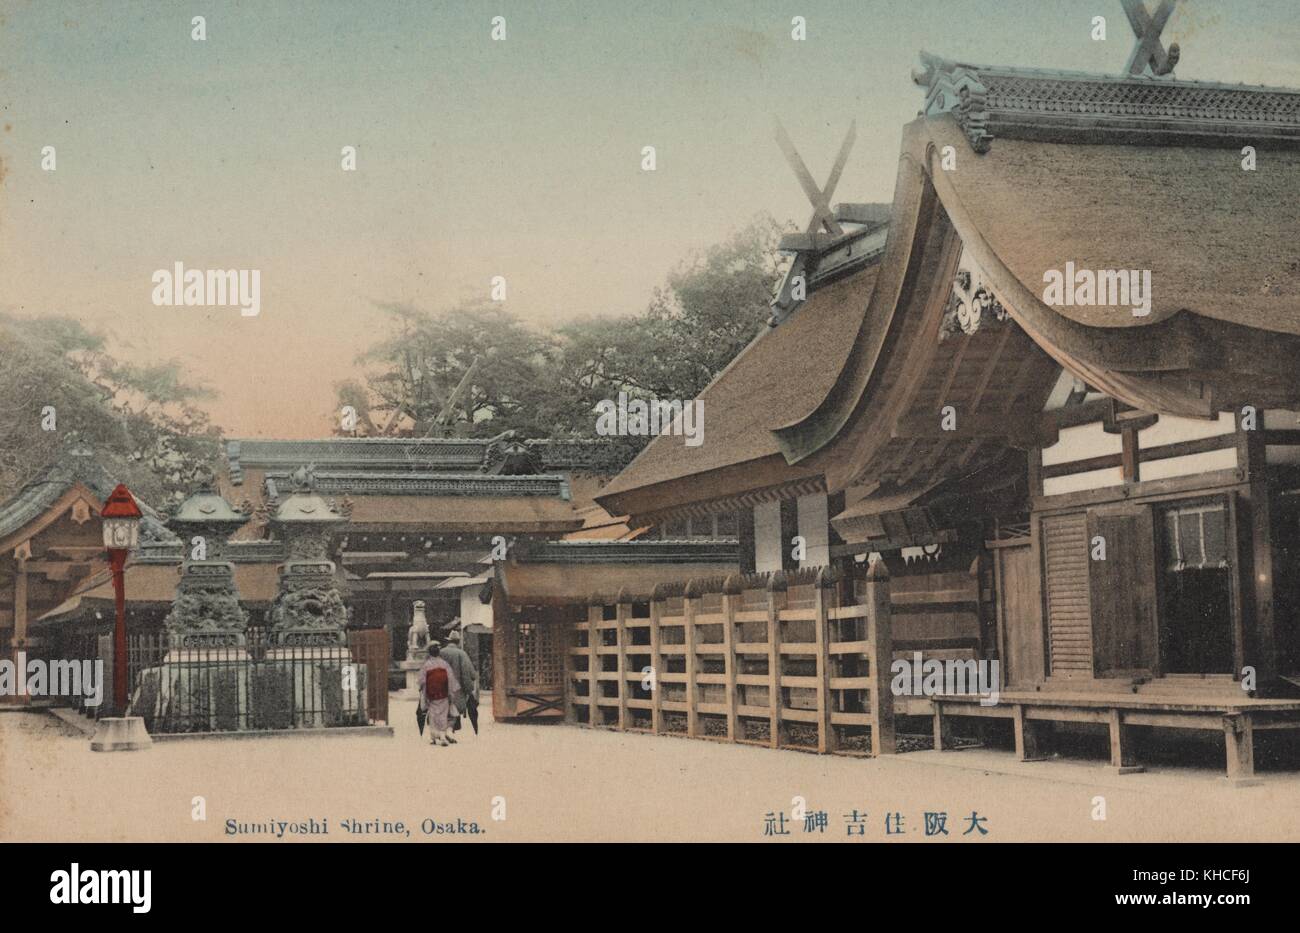 Una cartolina del Santuario di Sumiyoshi, il santuario principale di tutti i santuari di Sumiyoshi in Giappone, si può vedere la gente entrare in un'area recintata del santuario, statue di pietra possono essere anche visti sui terreni del tempio, Osaka, Giappone, 1912. Dalla Biblioteca pubblica di New York. Foto Stock